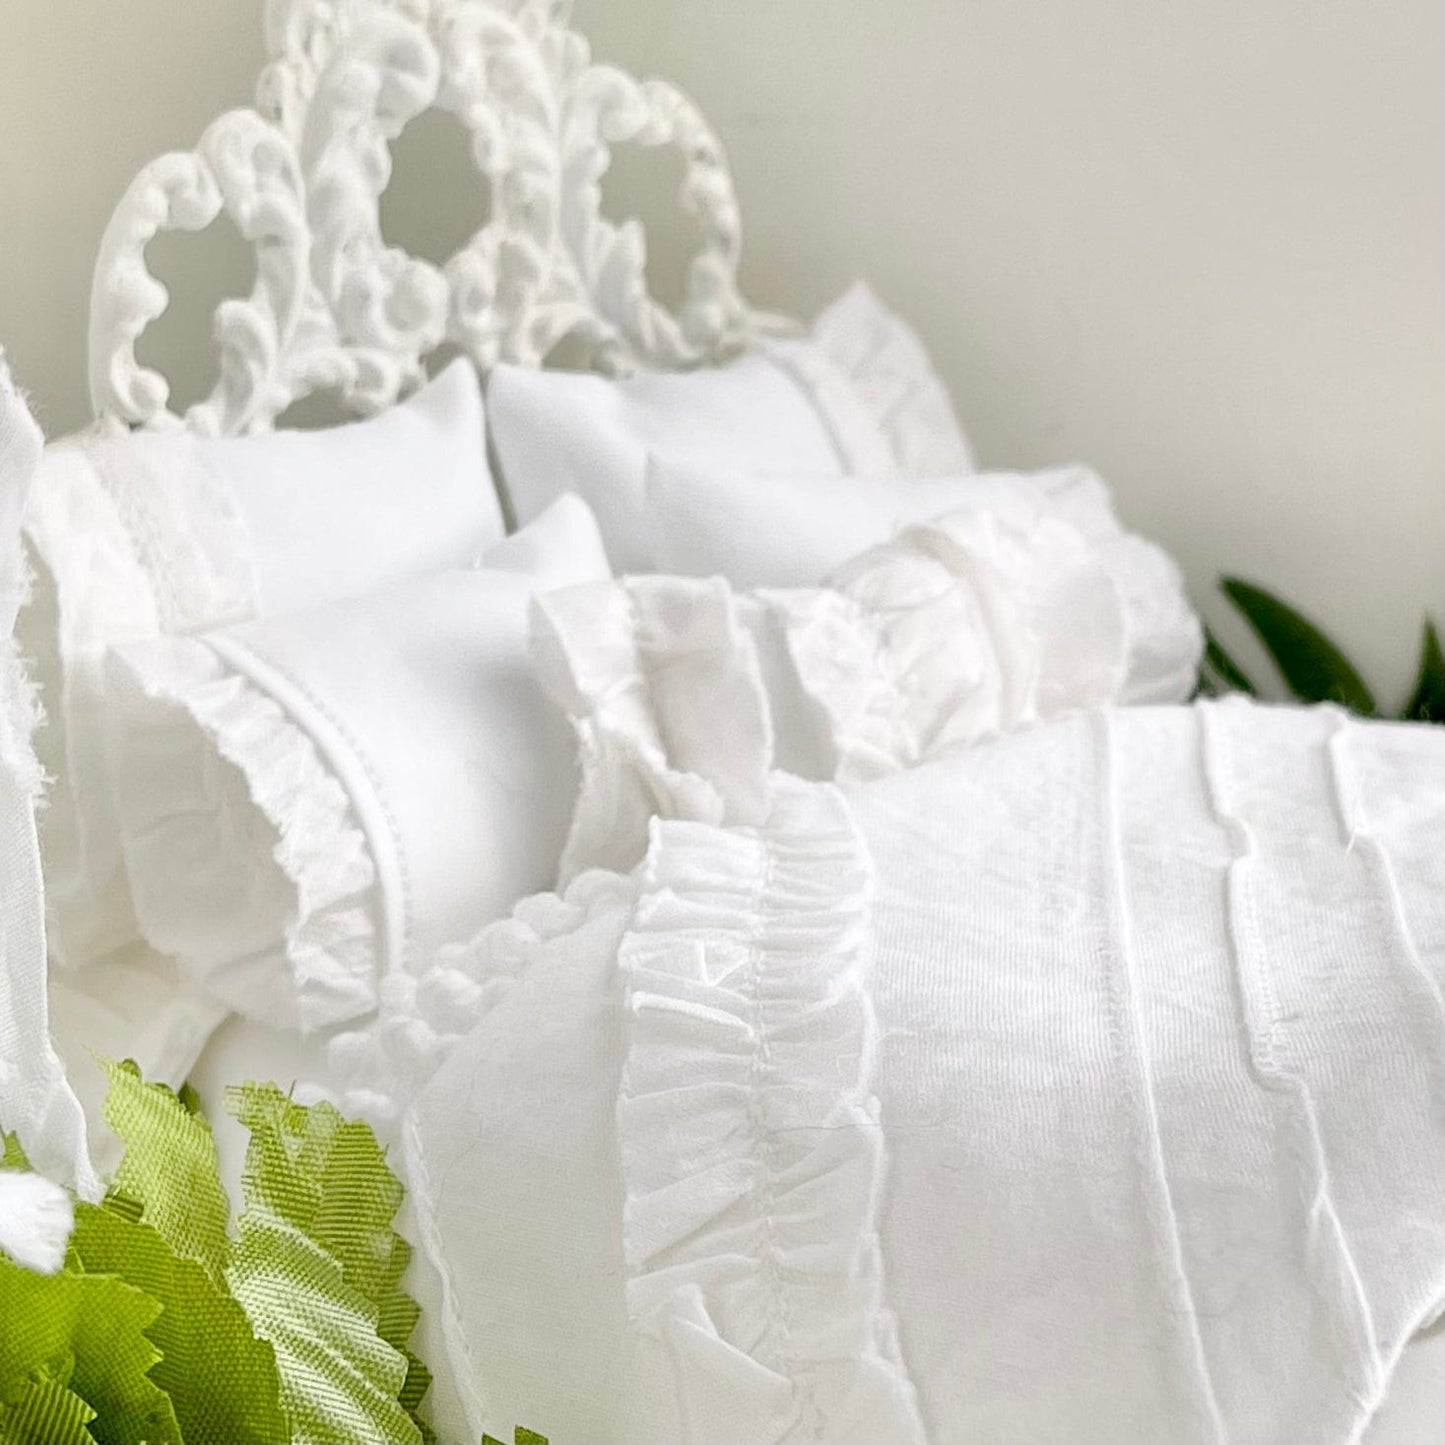 Chantallena White Bed Linens single Boundless White | Eight Piece White Cotton with White Ruffles and Pintucks Bedding Set | Ciara